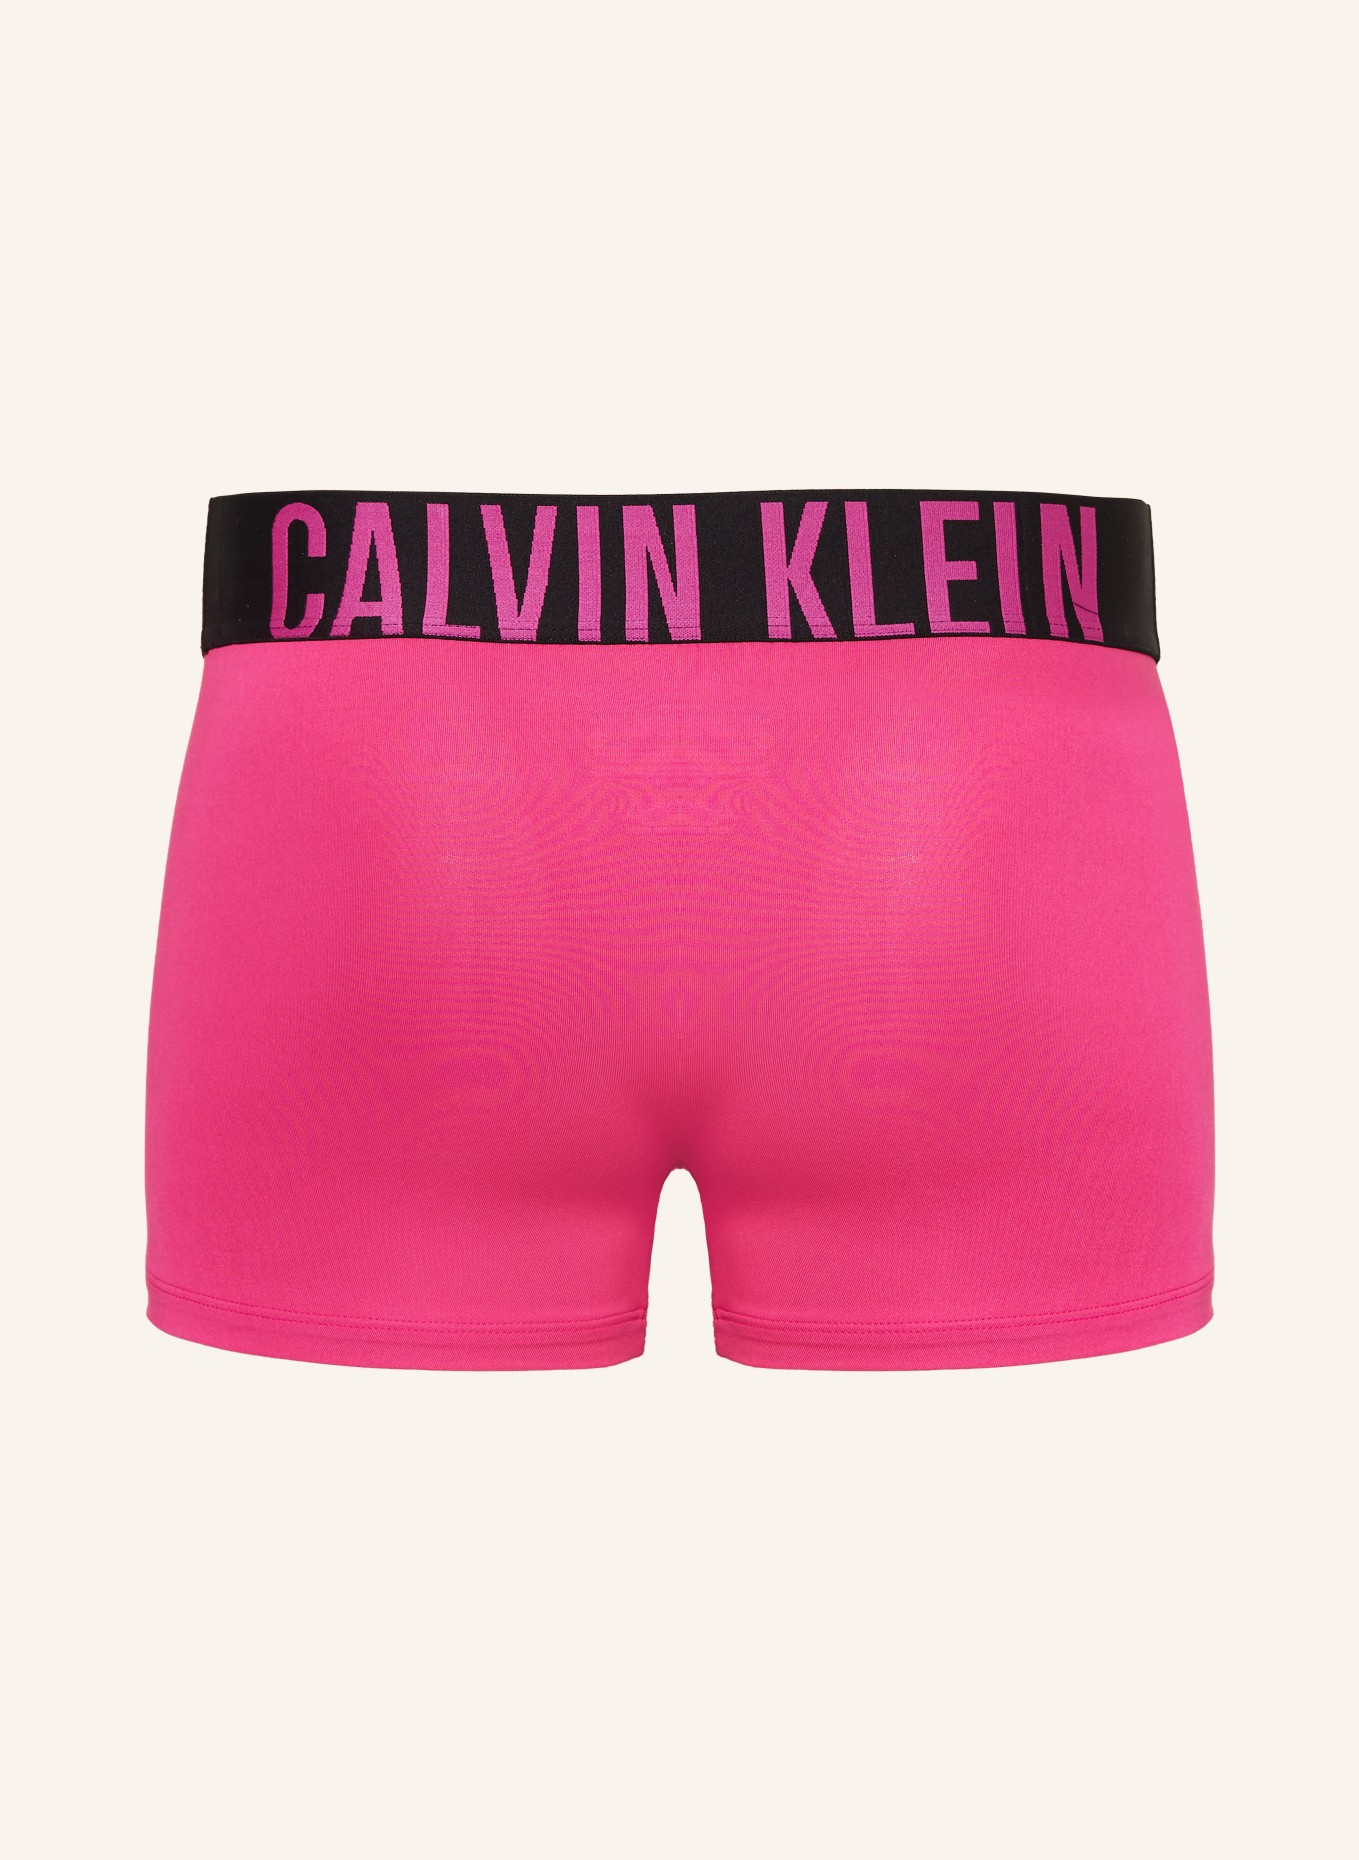 Calvin Klein 3-pack boxer shorts INTENSE POWER in pink/ dark blue